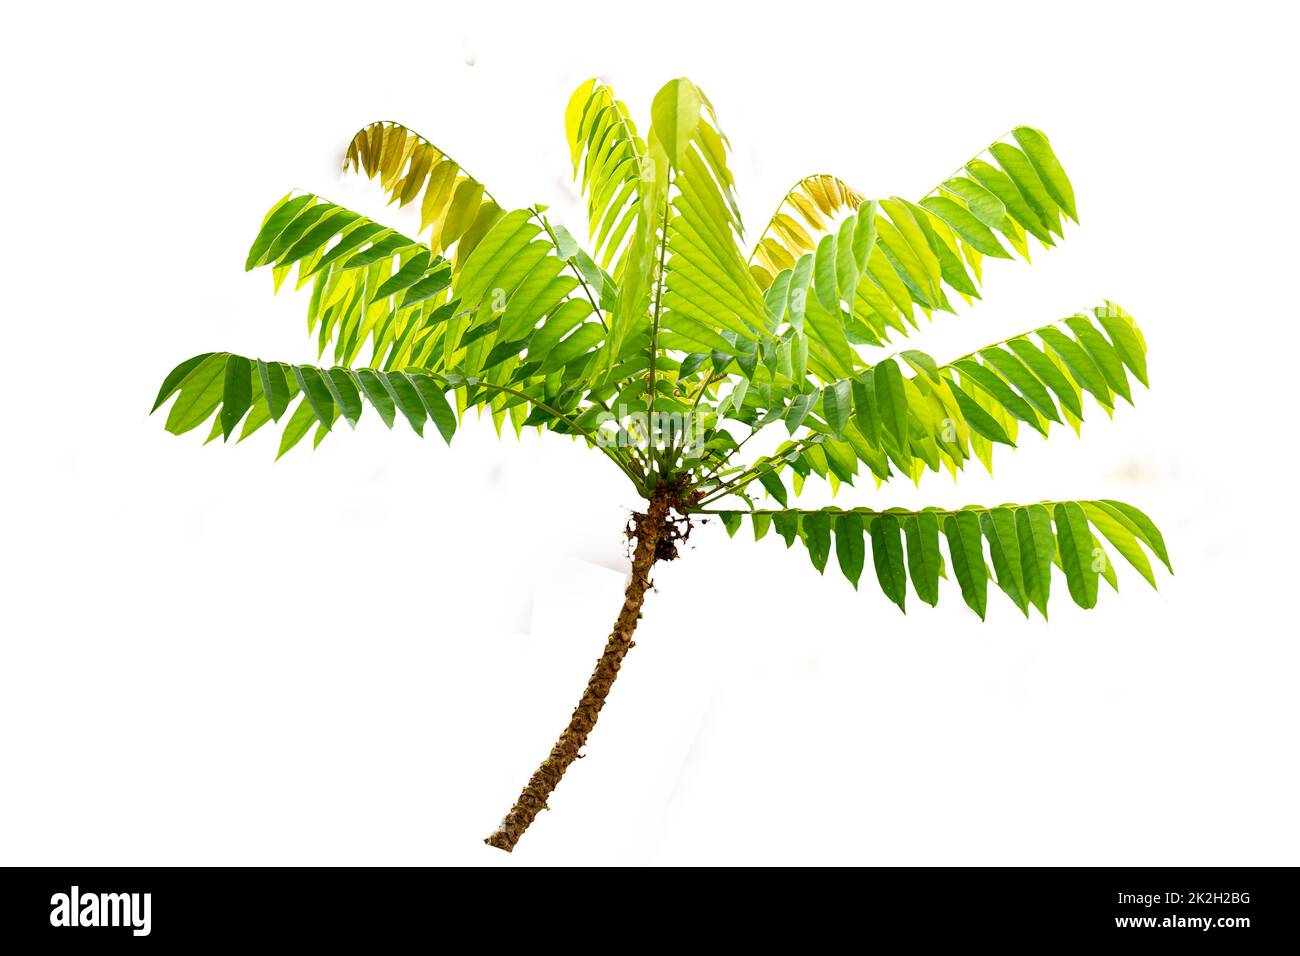 Averrhoa bilimbi Baum Zweig komplett mit frischen grünen Blattstielen und Triebe, isoliert auf einem weißen Hintergrund Stockfoto